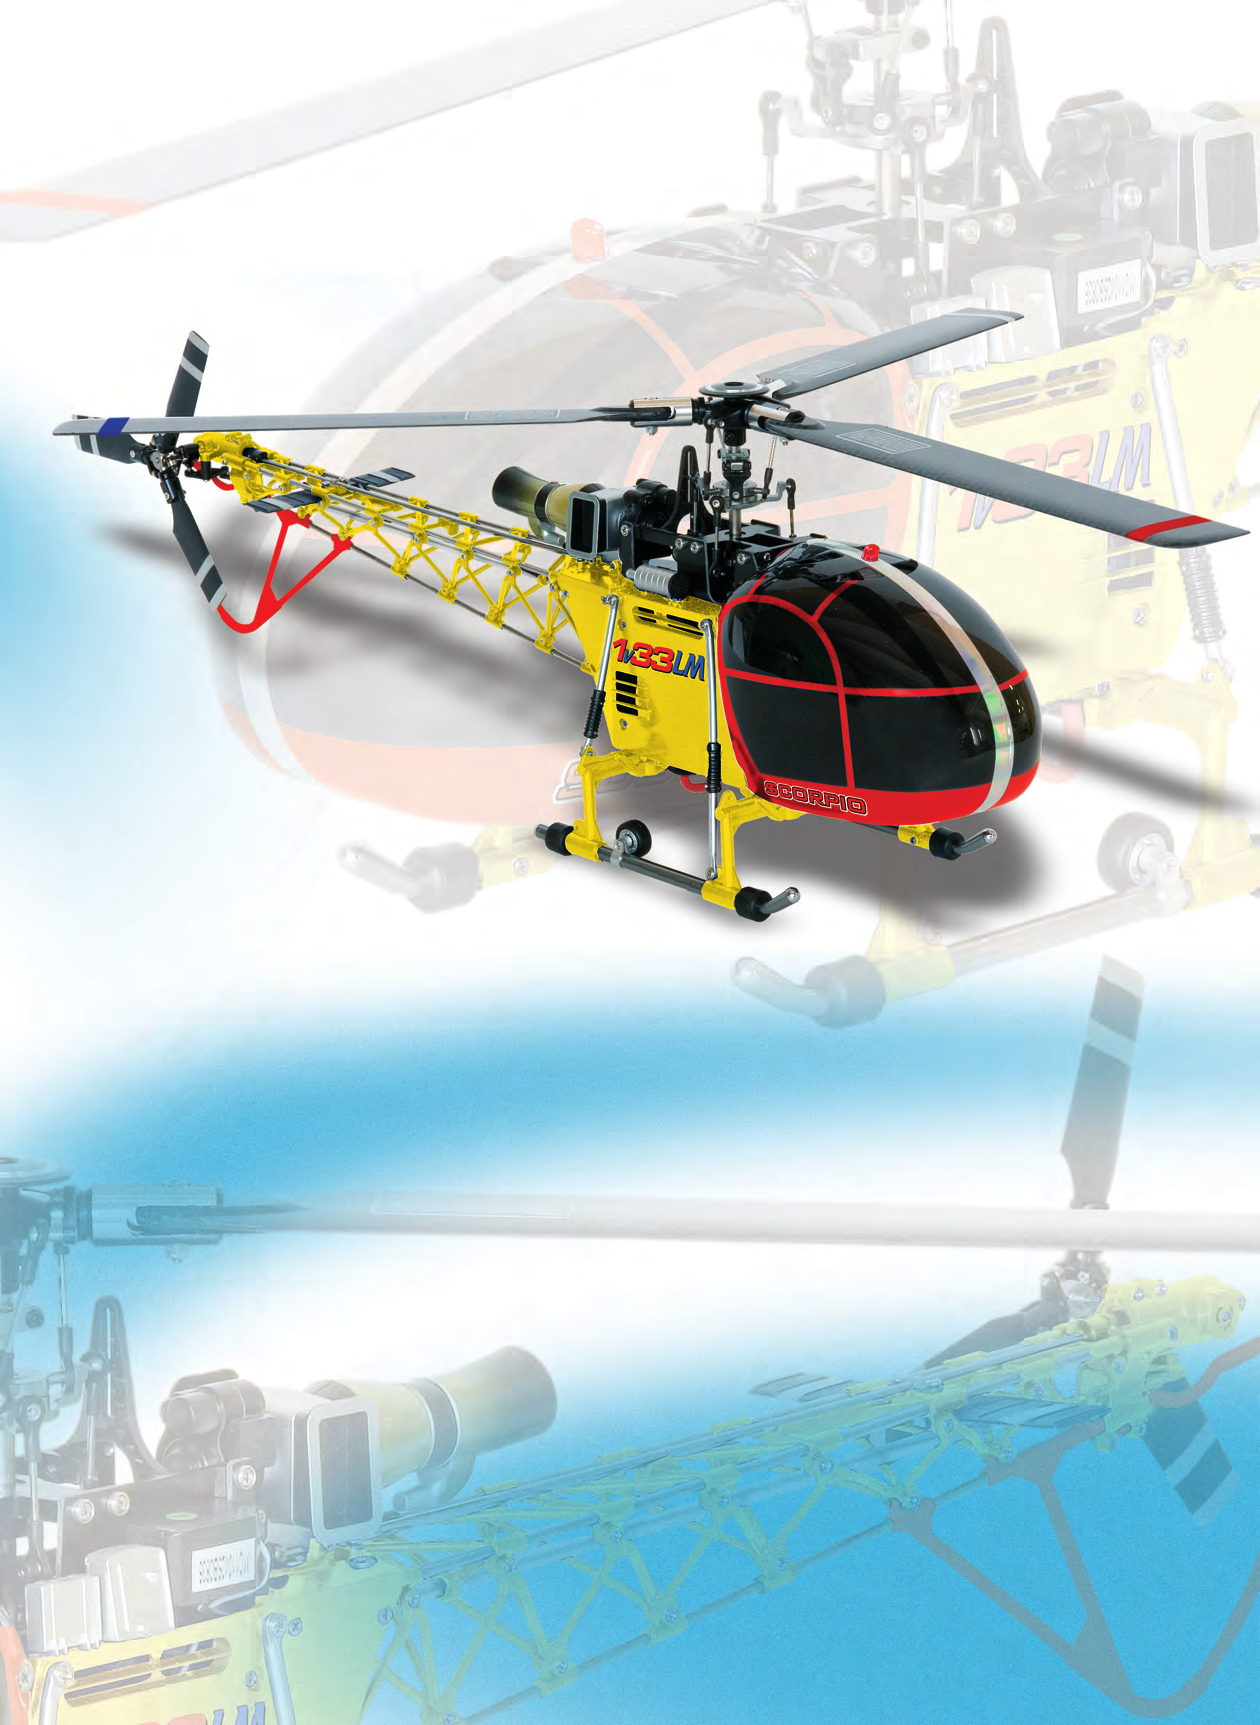 1V33 Lama Helikopter/Senderpult Dreiblatt-Helikopter, Flybarless, Brushless, in Superscale-Ausführung Dieser Helikopter ist mit der neuesten